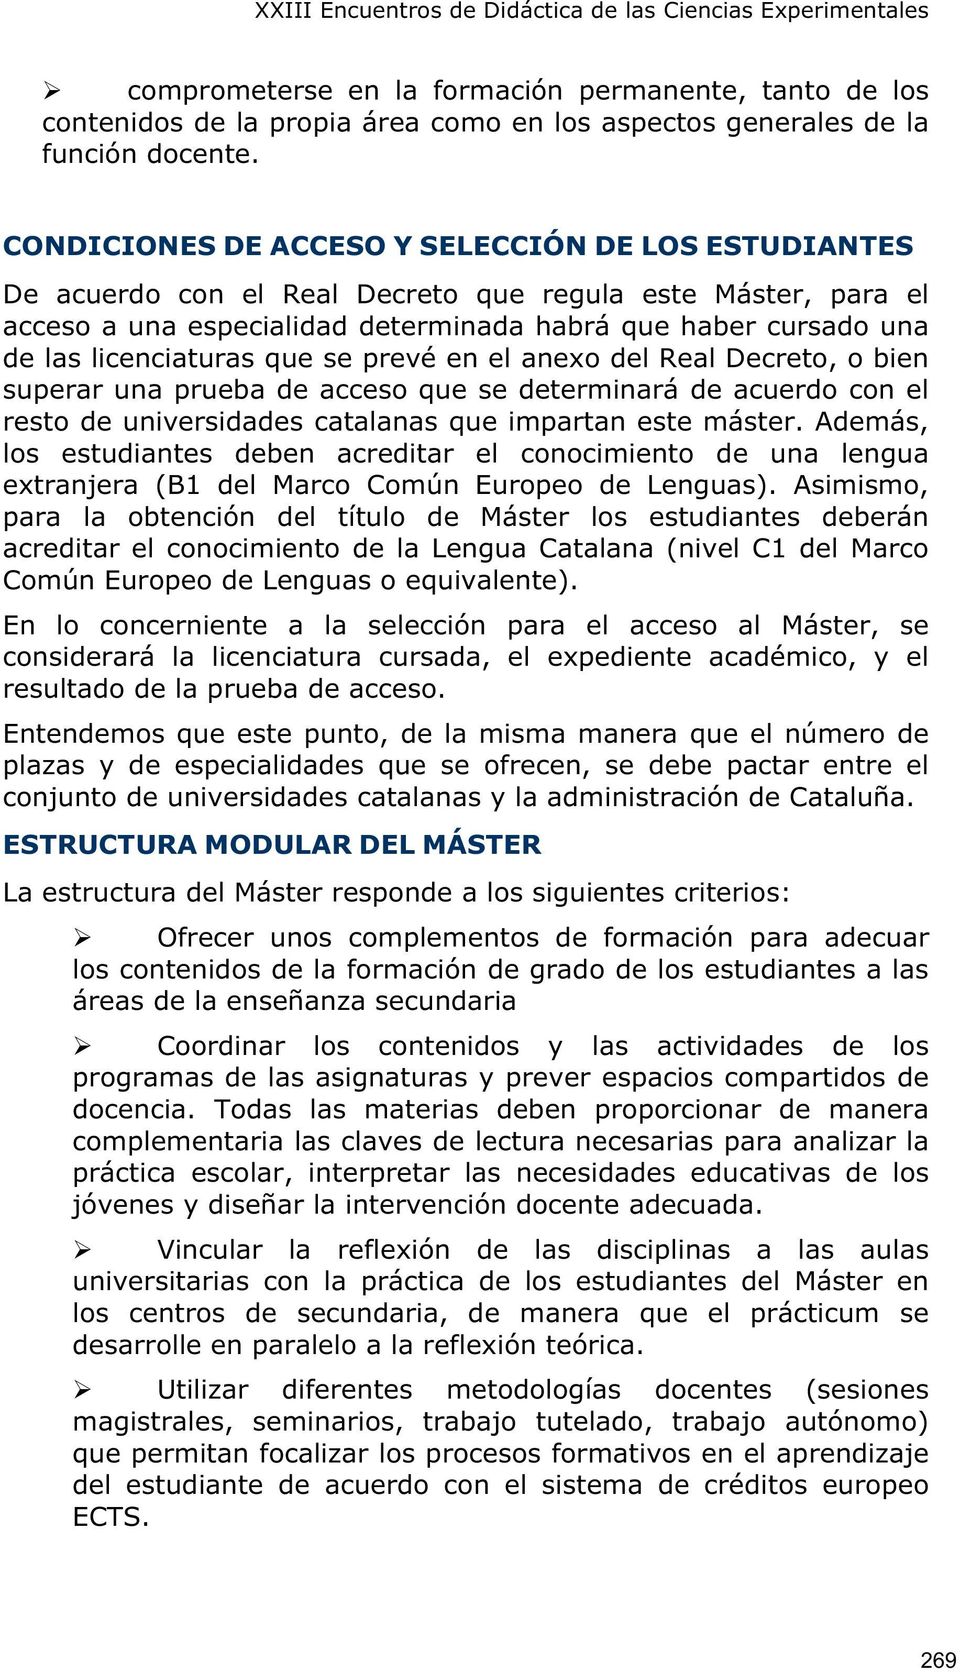 licenciaturas que se prevé en el anexo del Real Decreto, o bien superar una prueba de acceso que se determinará de acuerdo con el resto de universidades catalanas que impartan este máster.